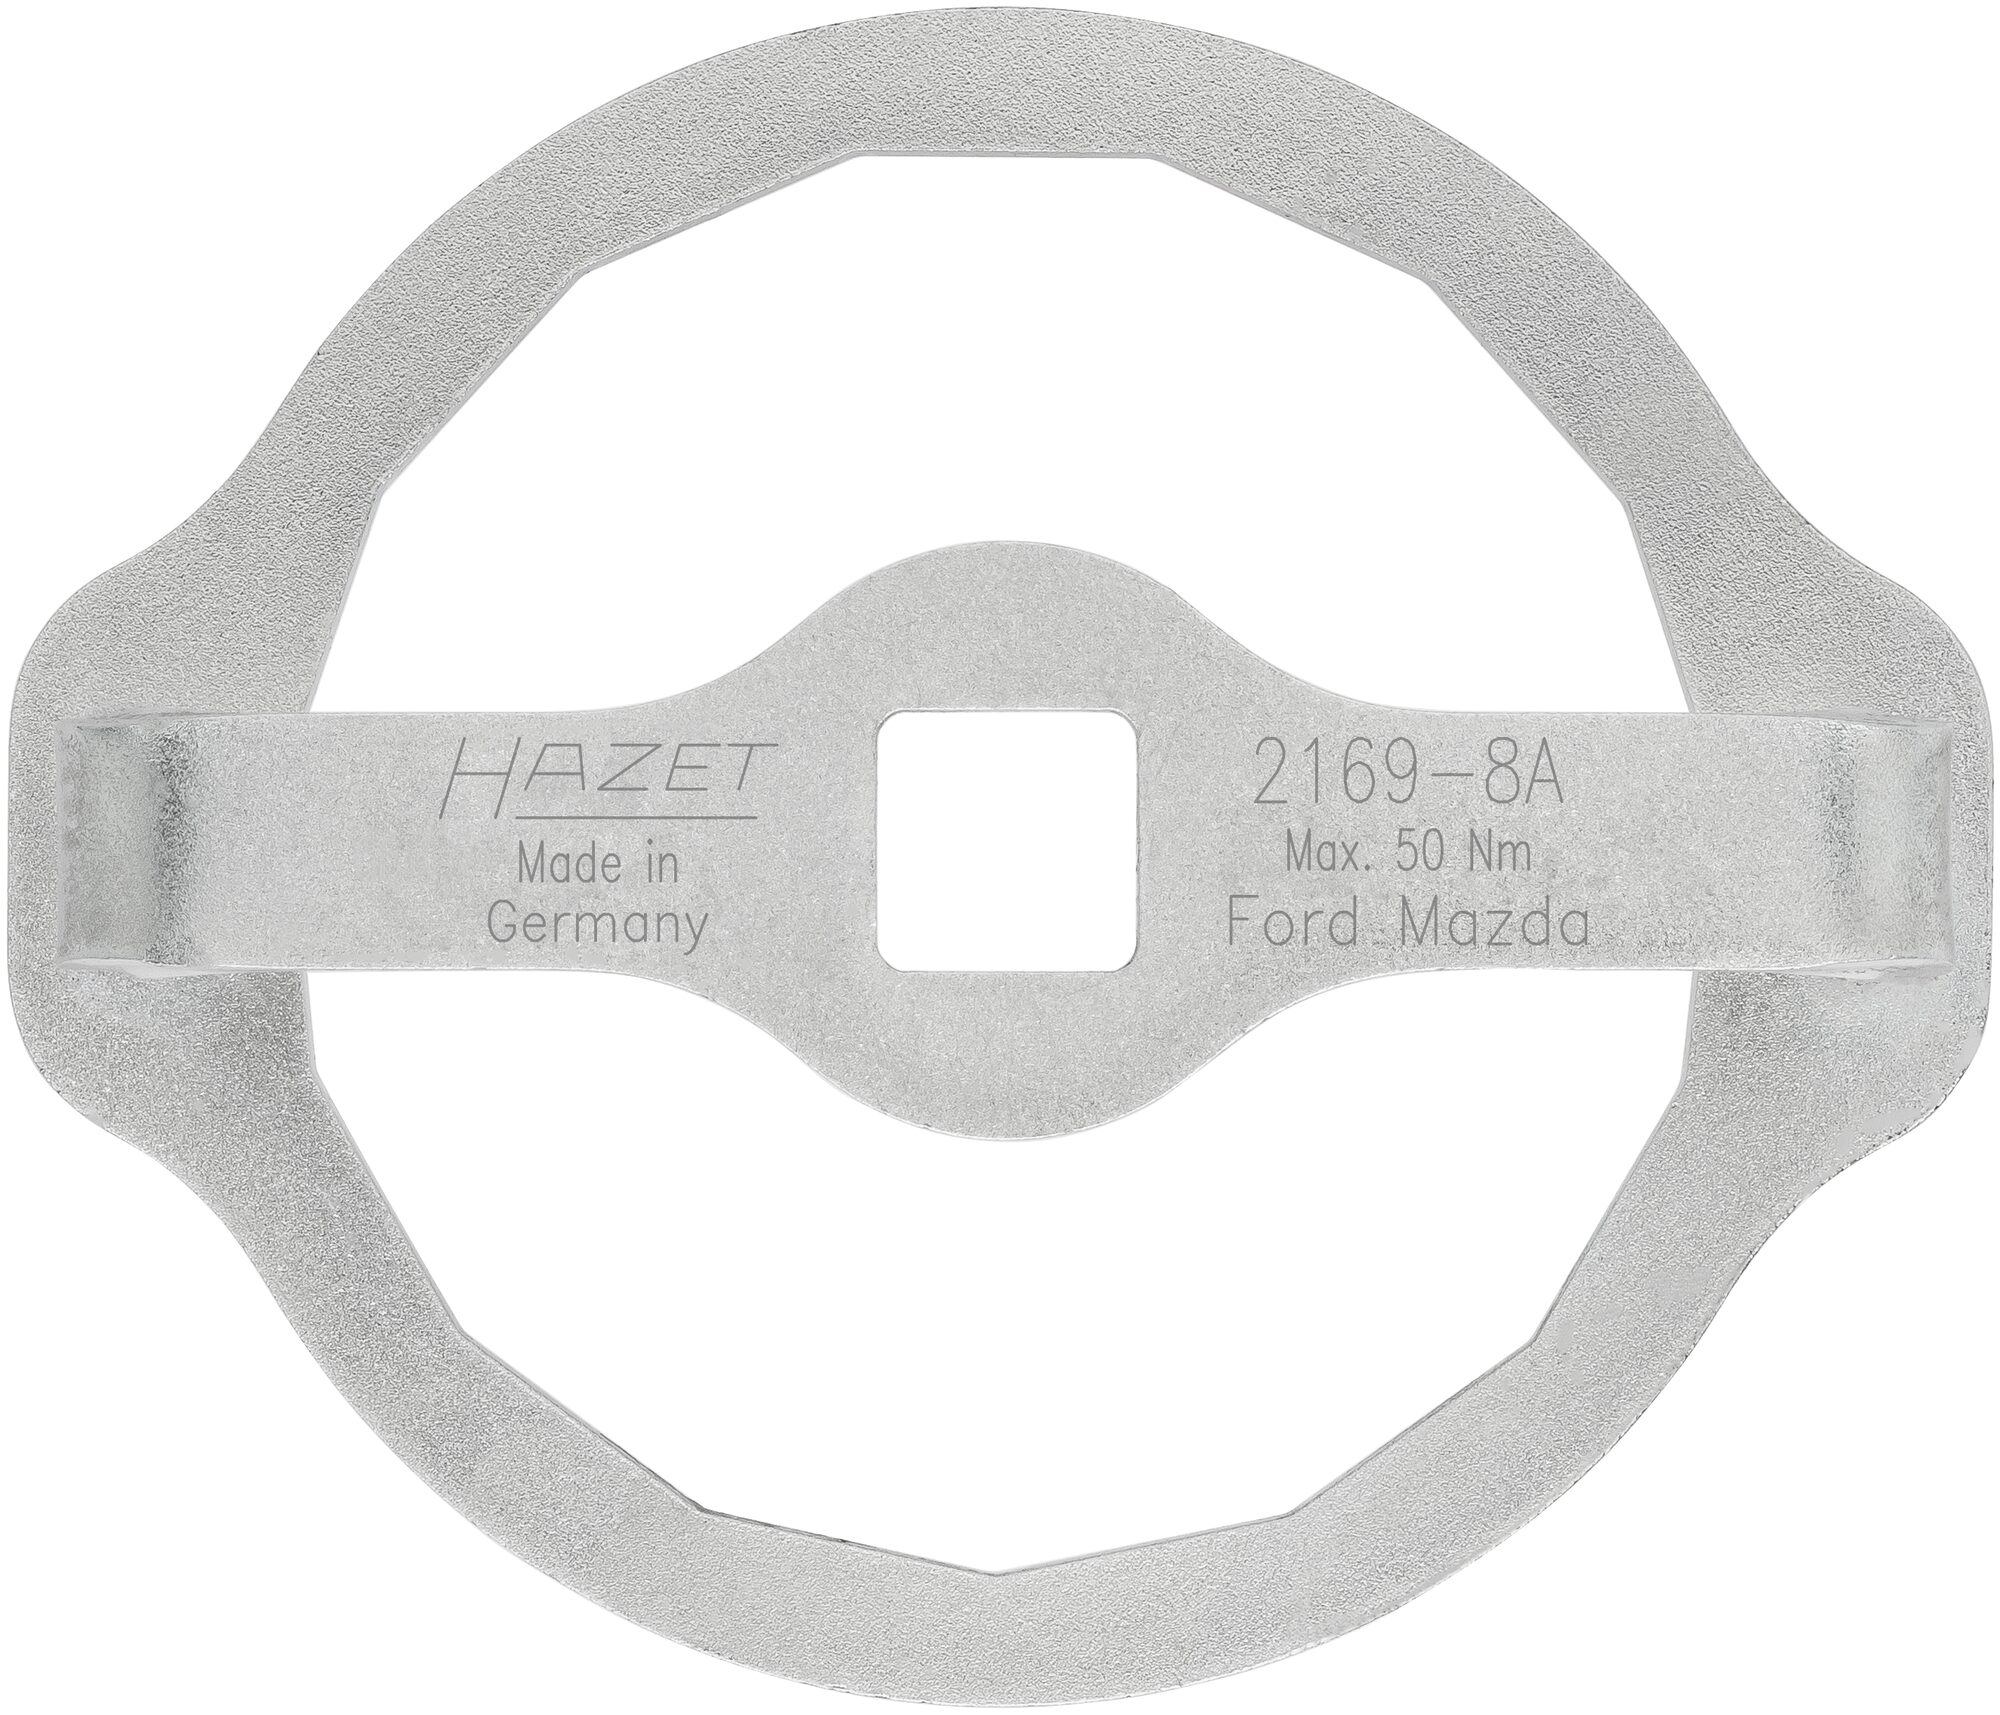 HAZET Ölfilter-Schlüssel 2169-8A · Vierkant hohl 12,5 mm (1/2 Zoll) · Außen 15-kant Profil · 105 mm